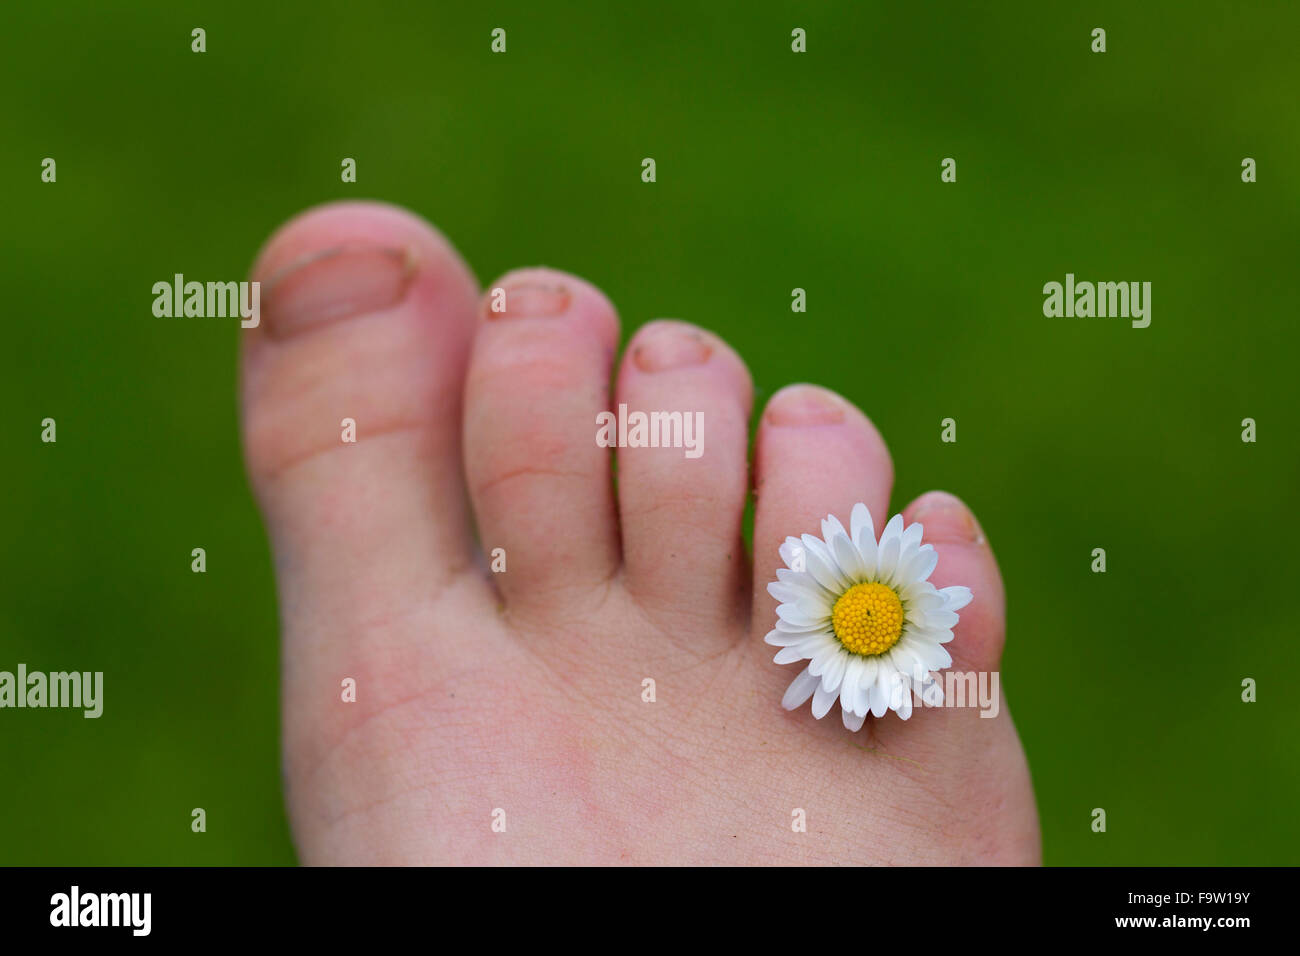 Comuni / daisy lawn daisy (Bellis perennis) fiore tra le dita dei piedi del bambino il piede Foto Stock